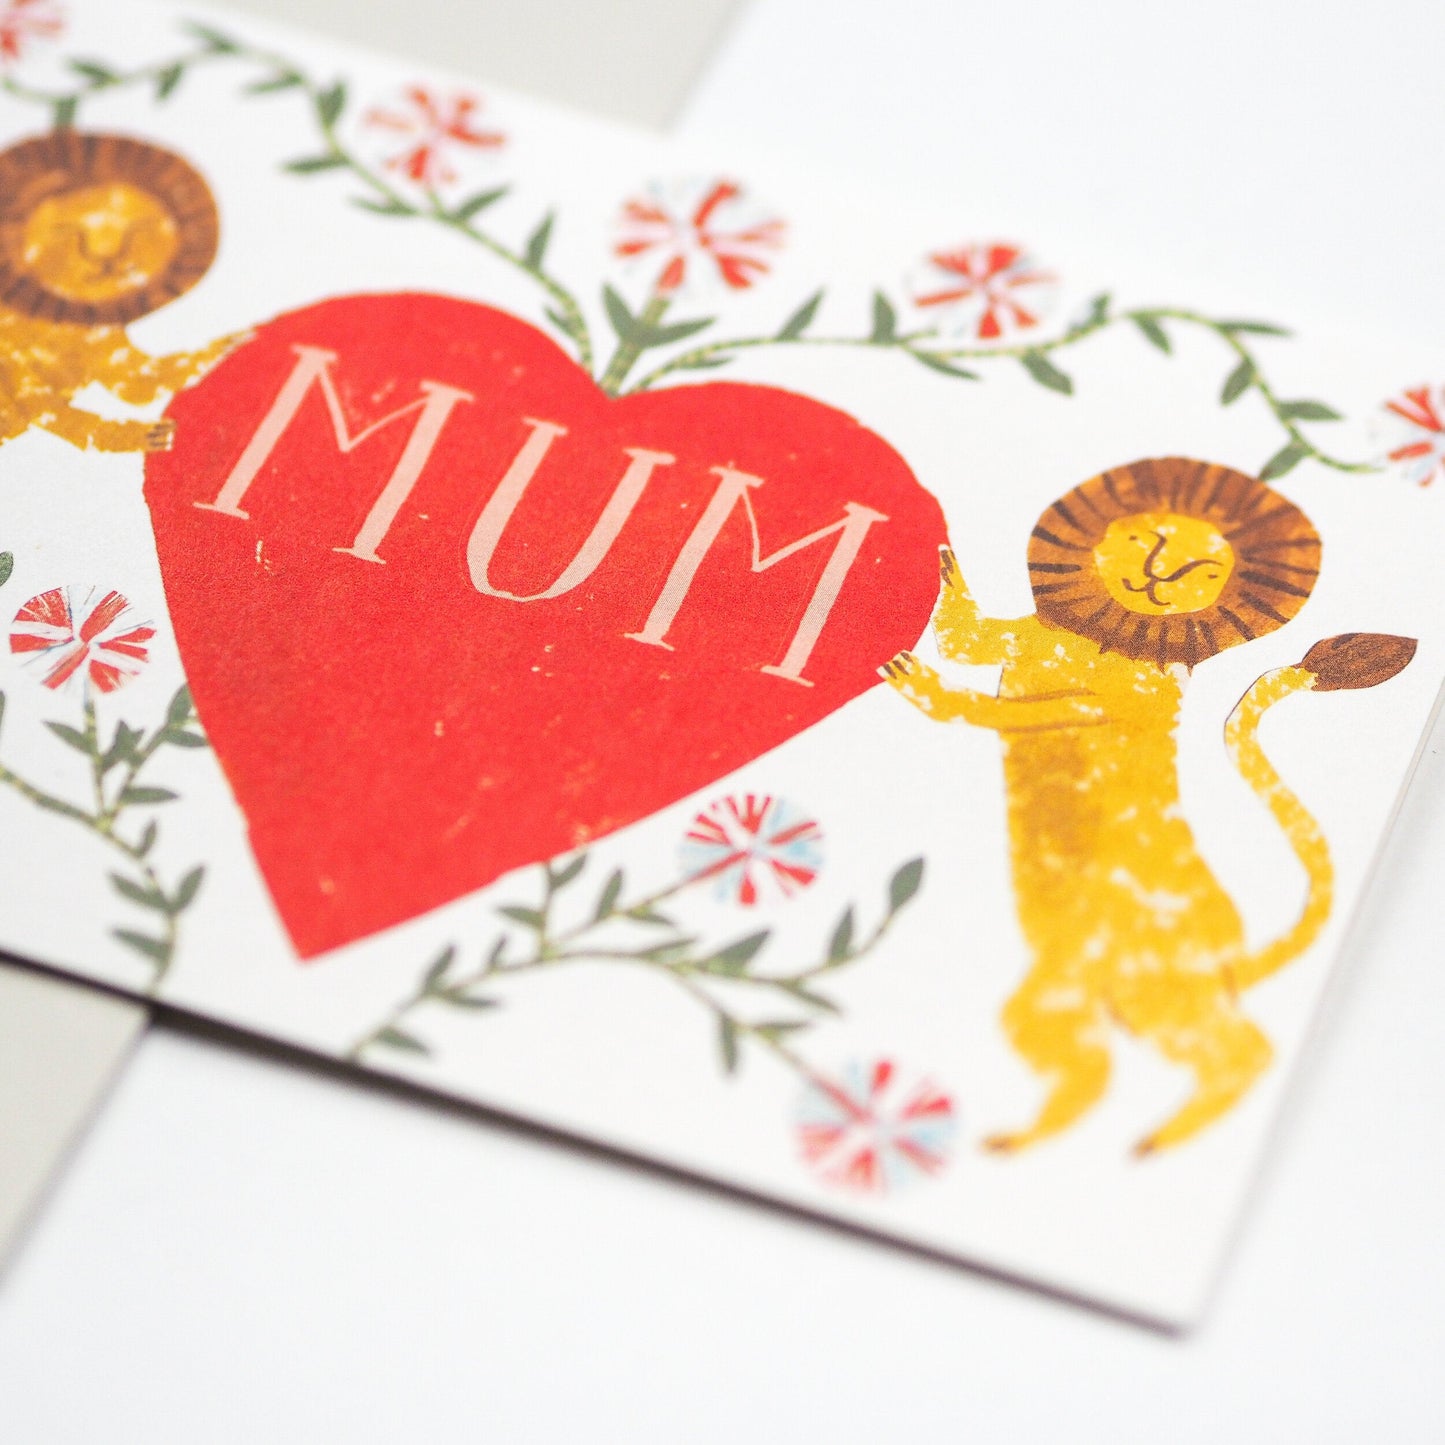 Mum Lion Heart Card